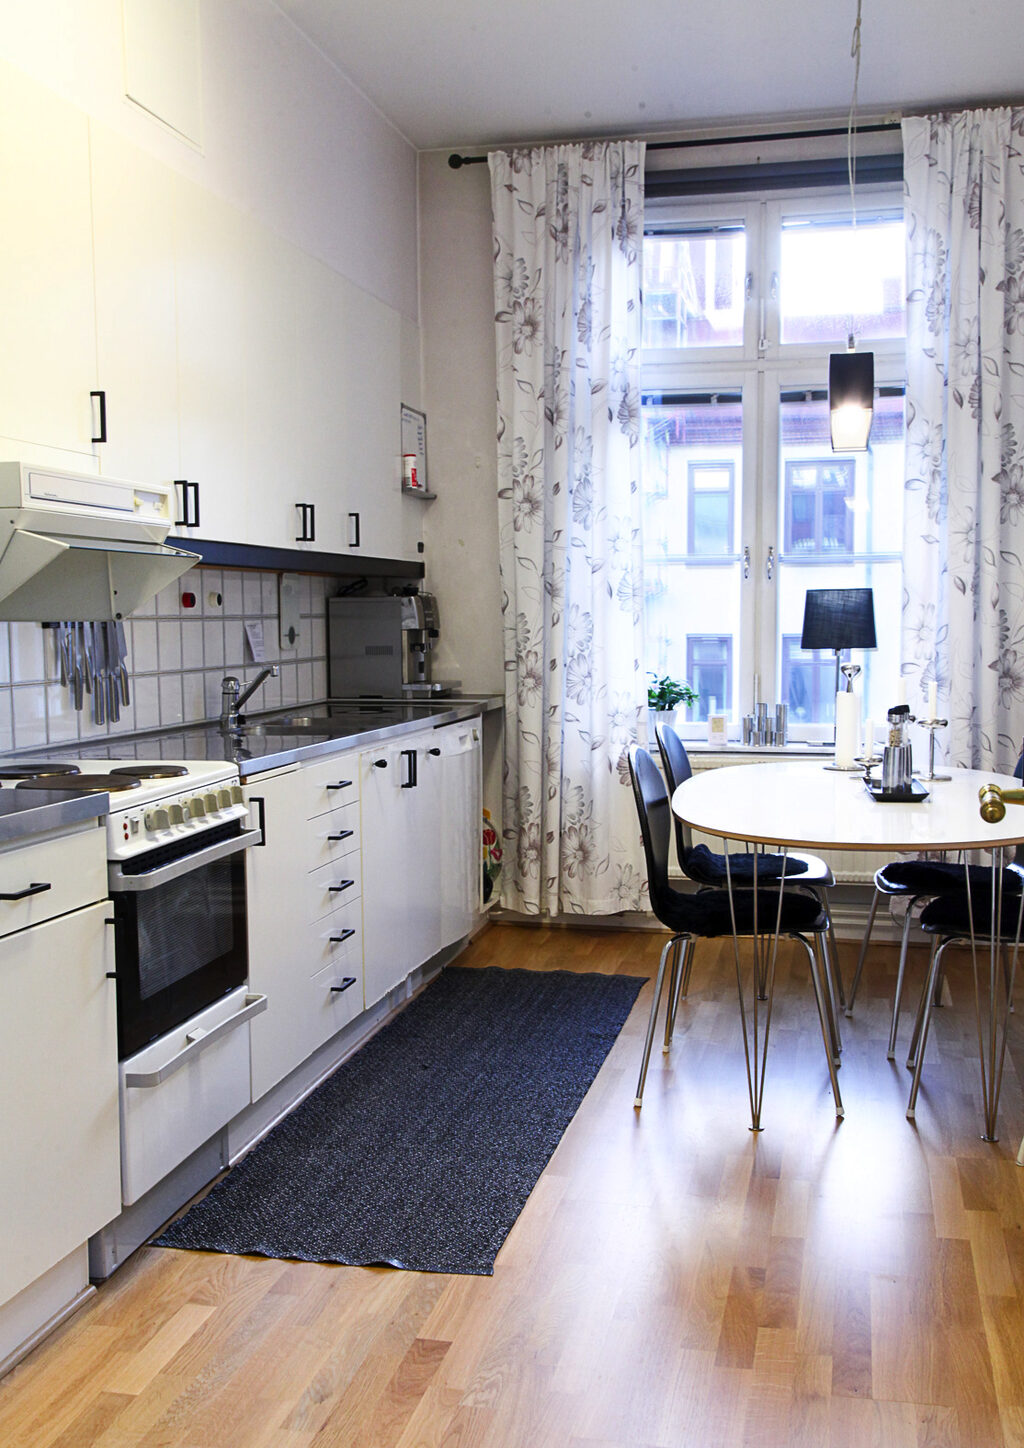 Lägenhetsbyte - Kristinelundsgatan 3, 41137, Göteborg, 411 37 Göteborg